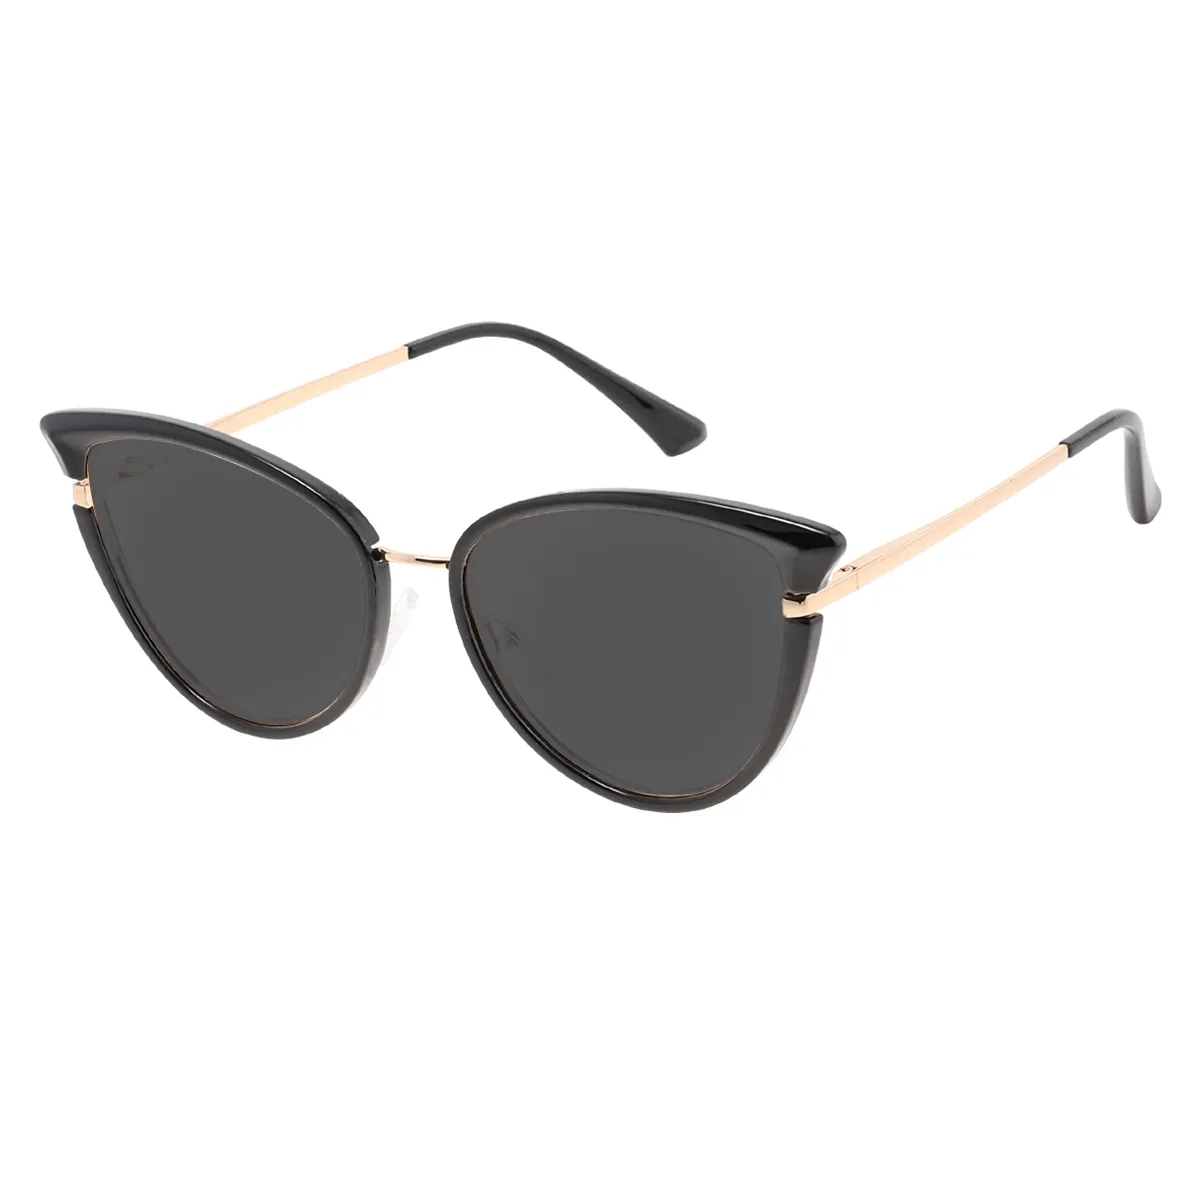 Fallon - Cat-eye Black Sunglasses for Women